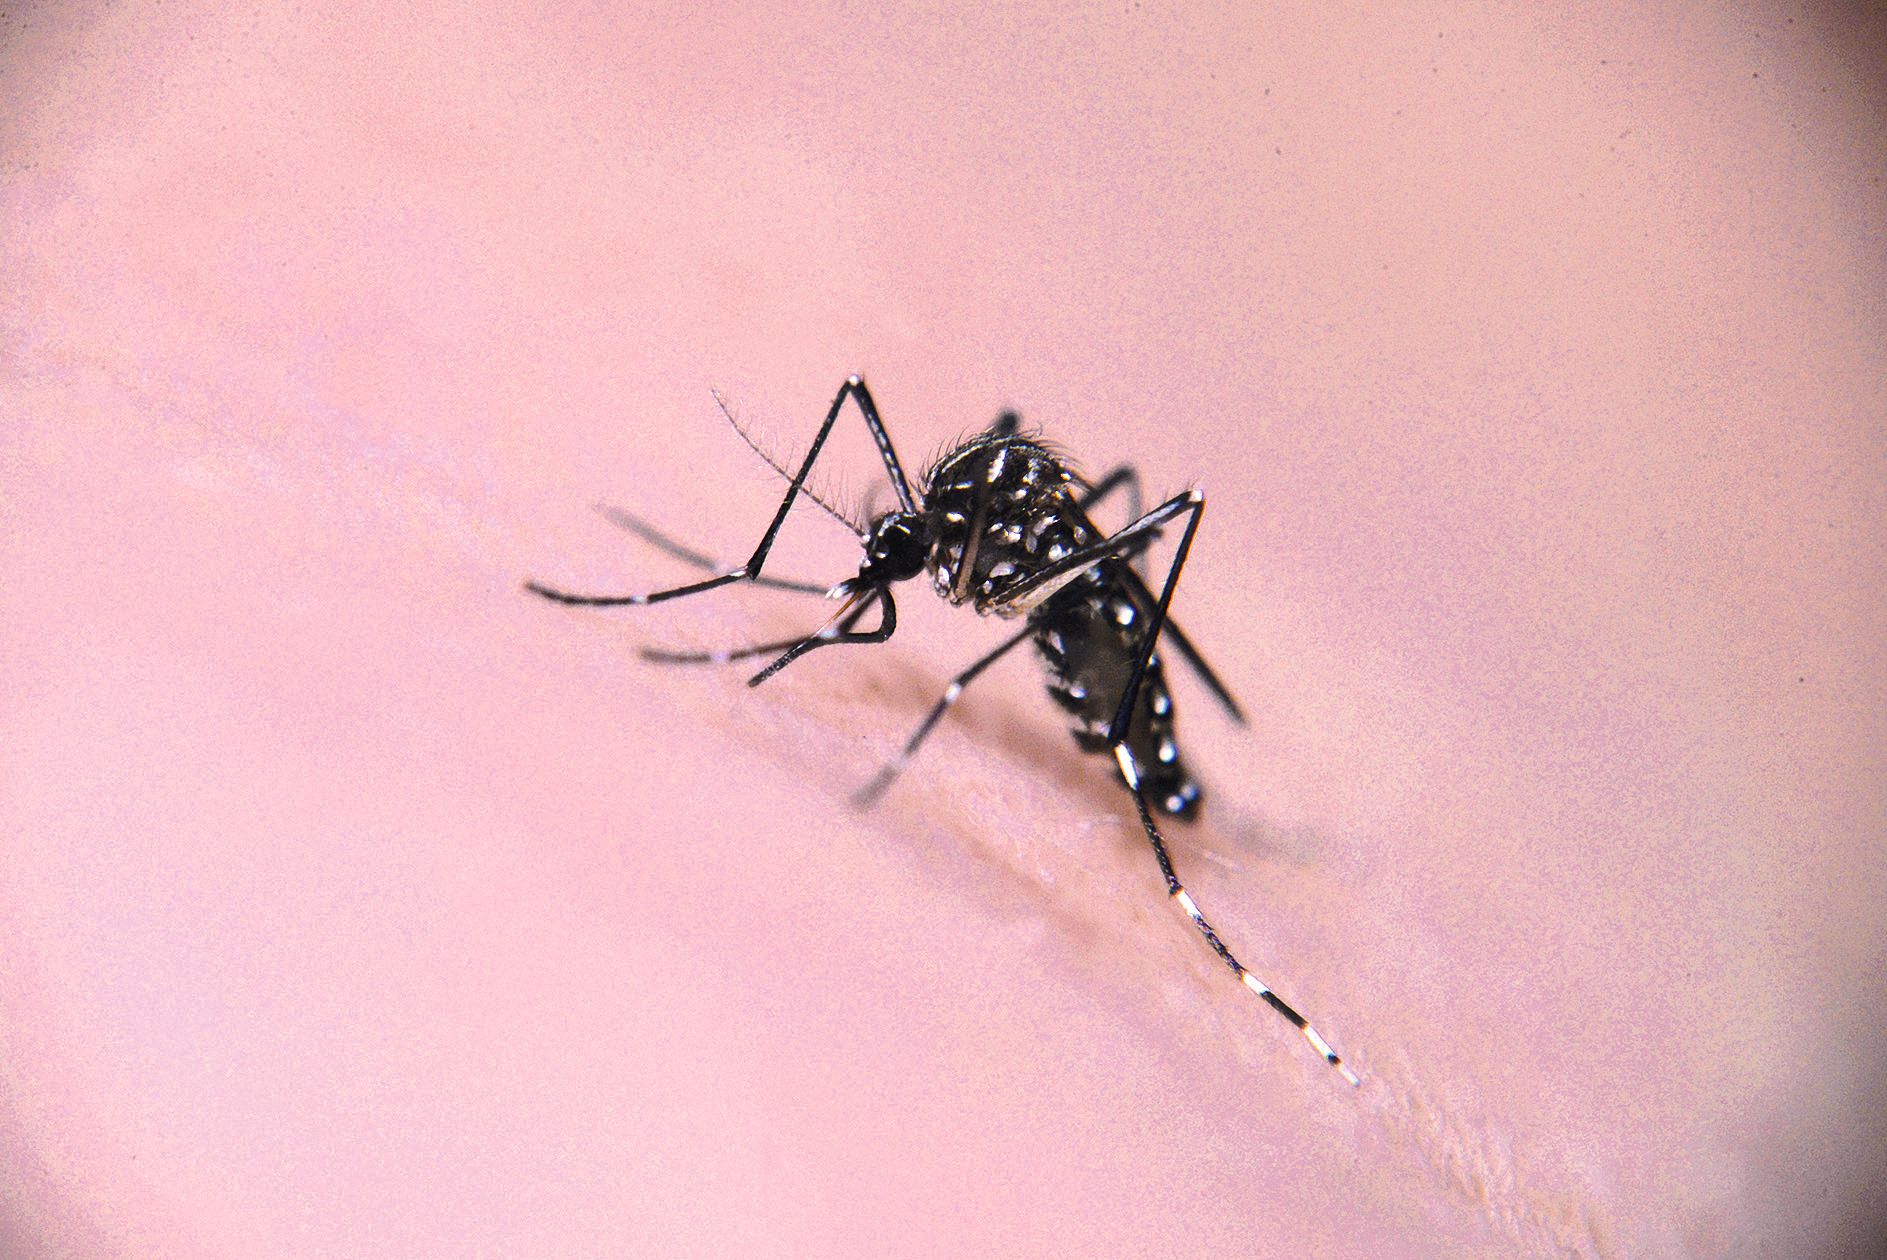 La grande crainte des autorités sanitaires est la dengue de type 2, celle qui fait actuellement des ravages au Vanuatu. Les passagers arrivant de Port-Vila sont systématiquement observés à La Tontouta par une caméra capable de déceler la fièvre.